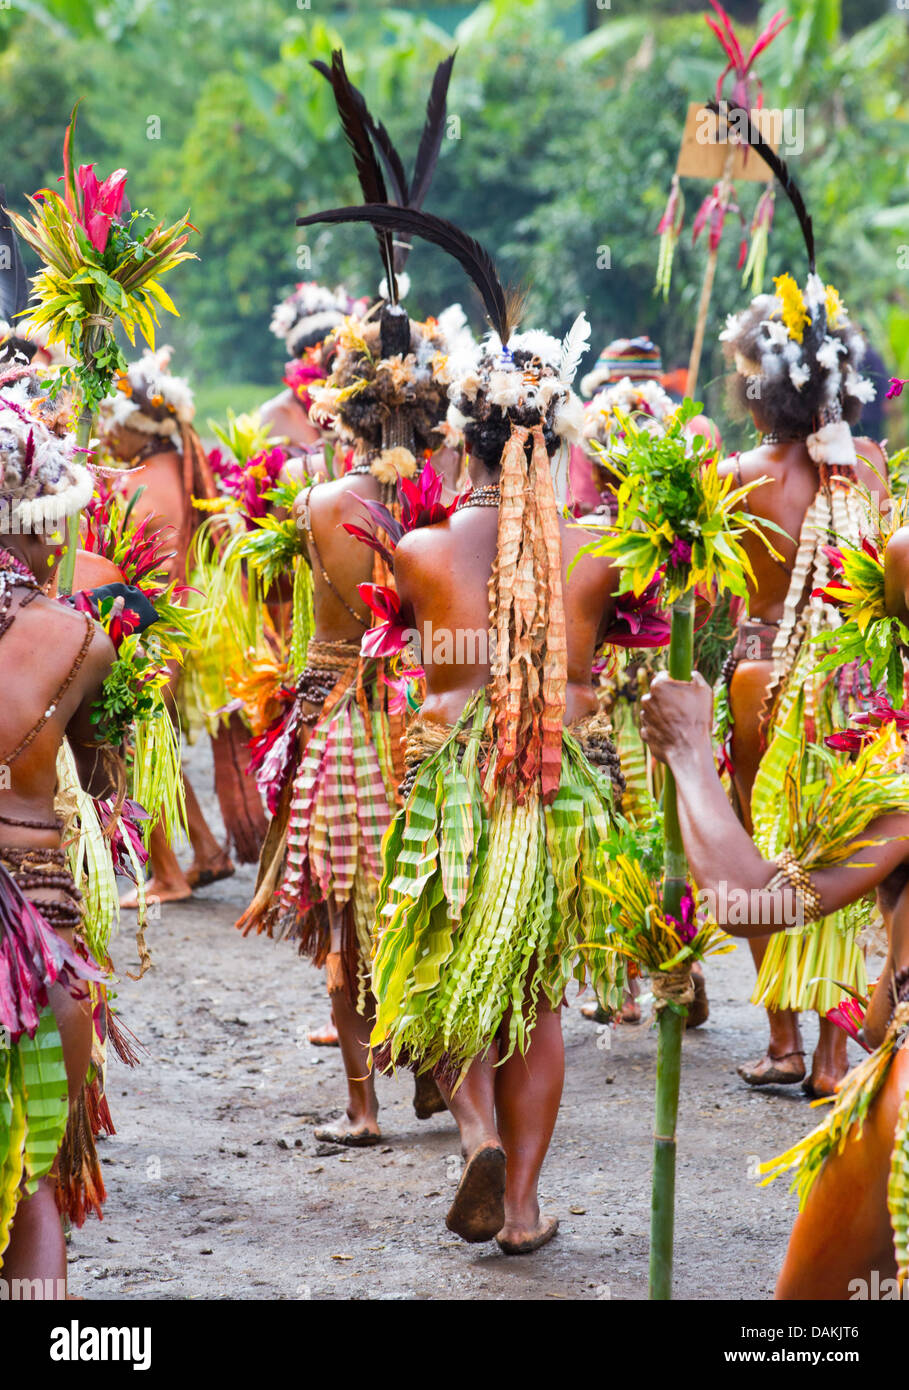 Leute des Stammes Selehoto Alunumuno Stammes Tracht und Tanz, Hochland von Papua-Neu-Guinea Stockfoto